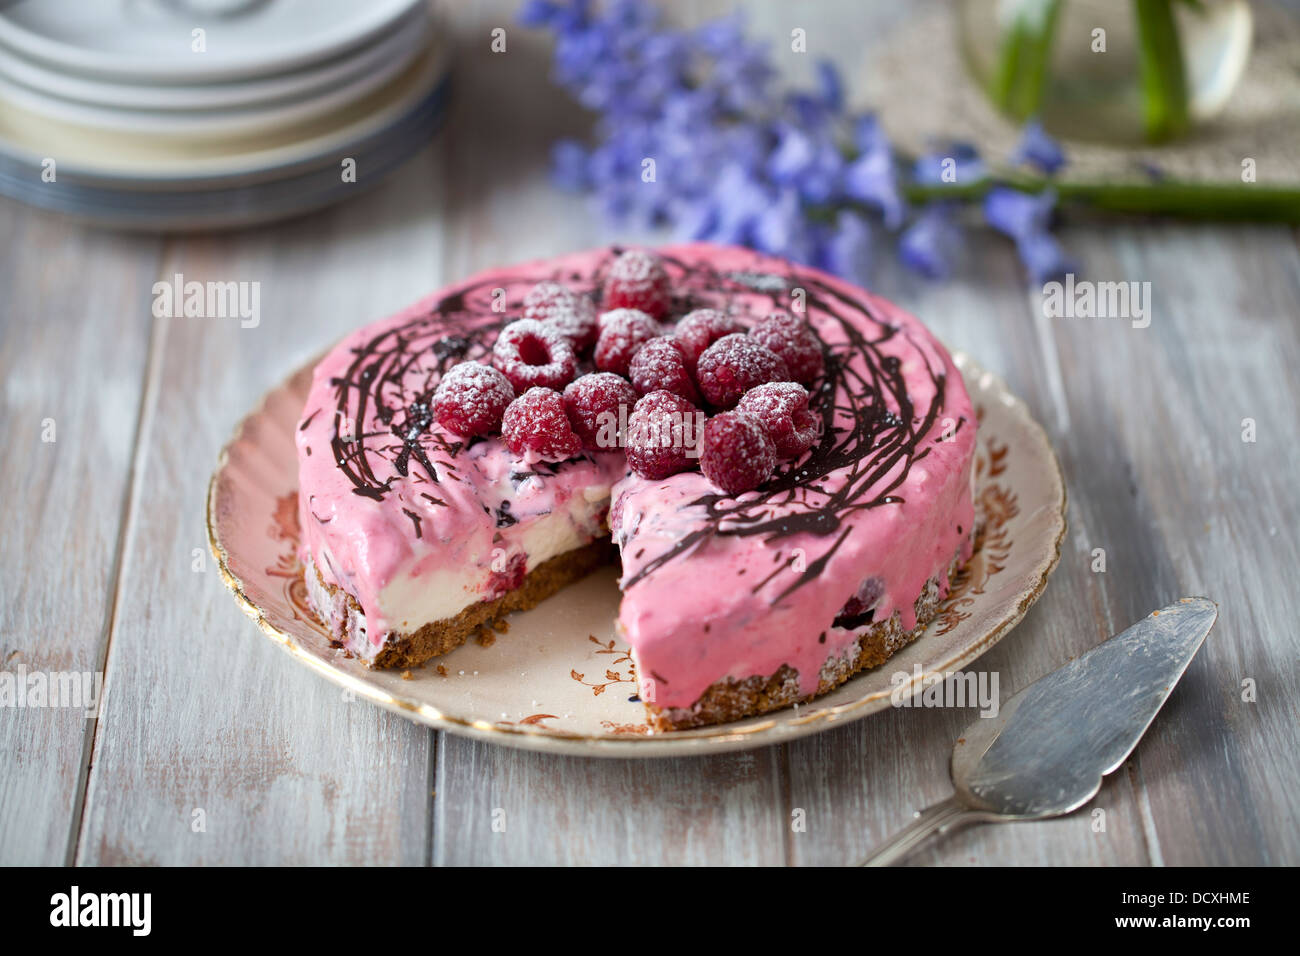 Cheesecake con fresas en la mesa de madera Foto de stock